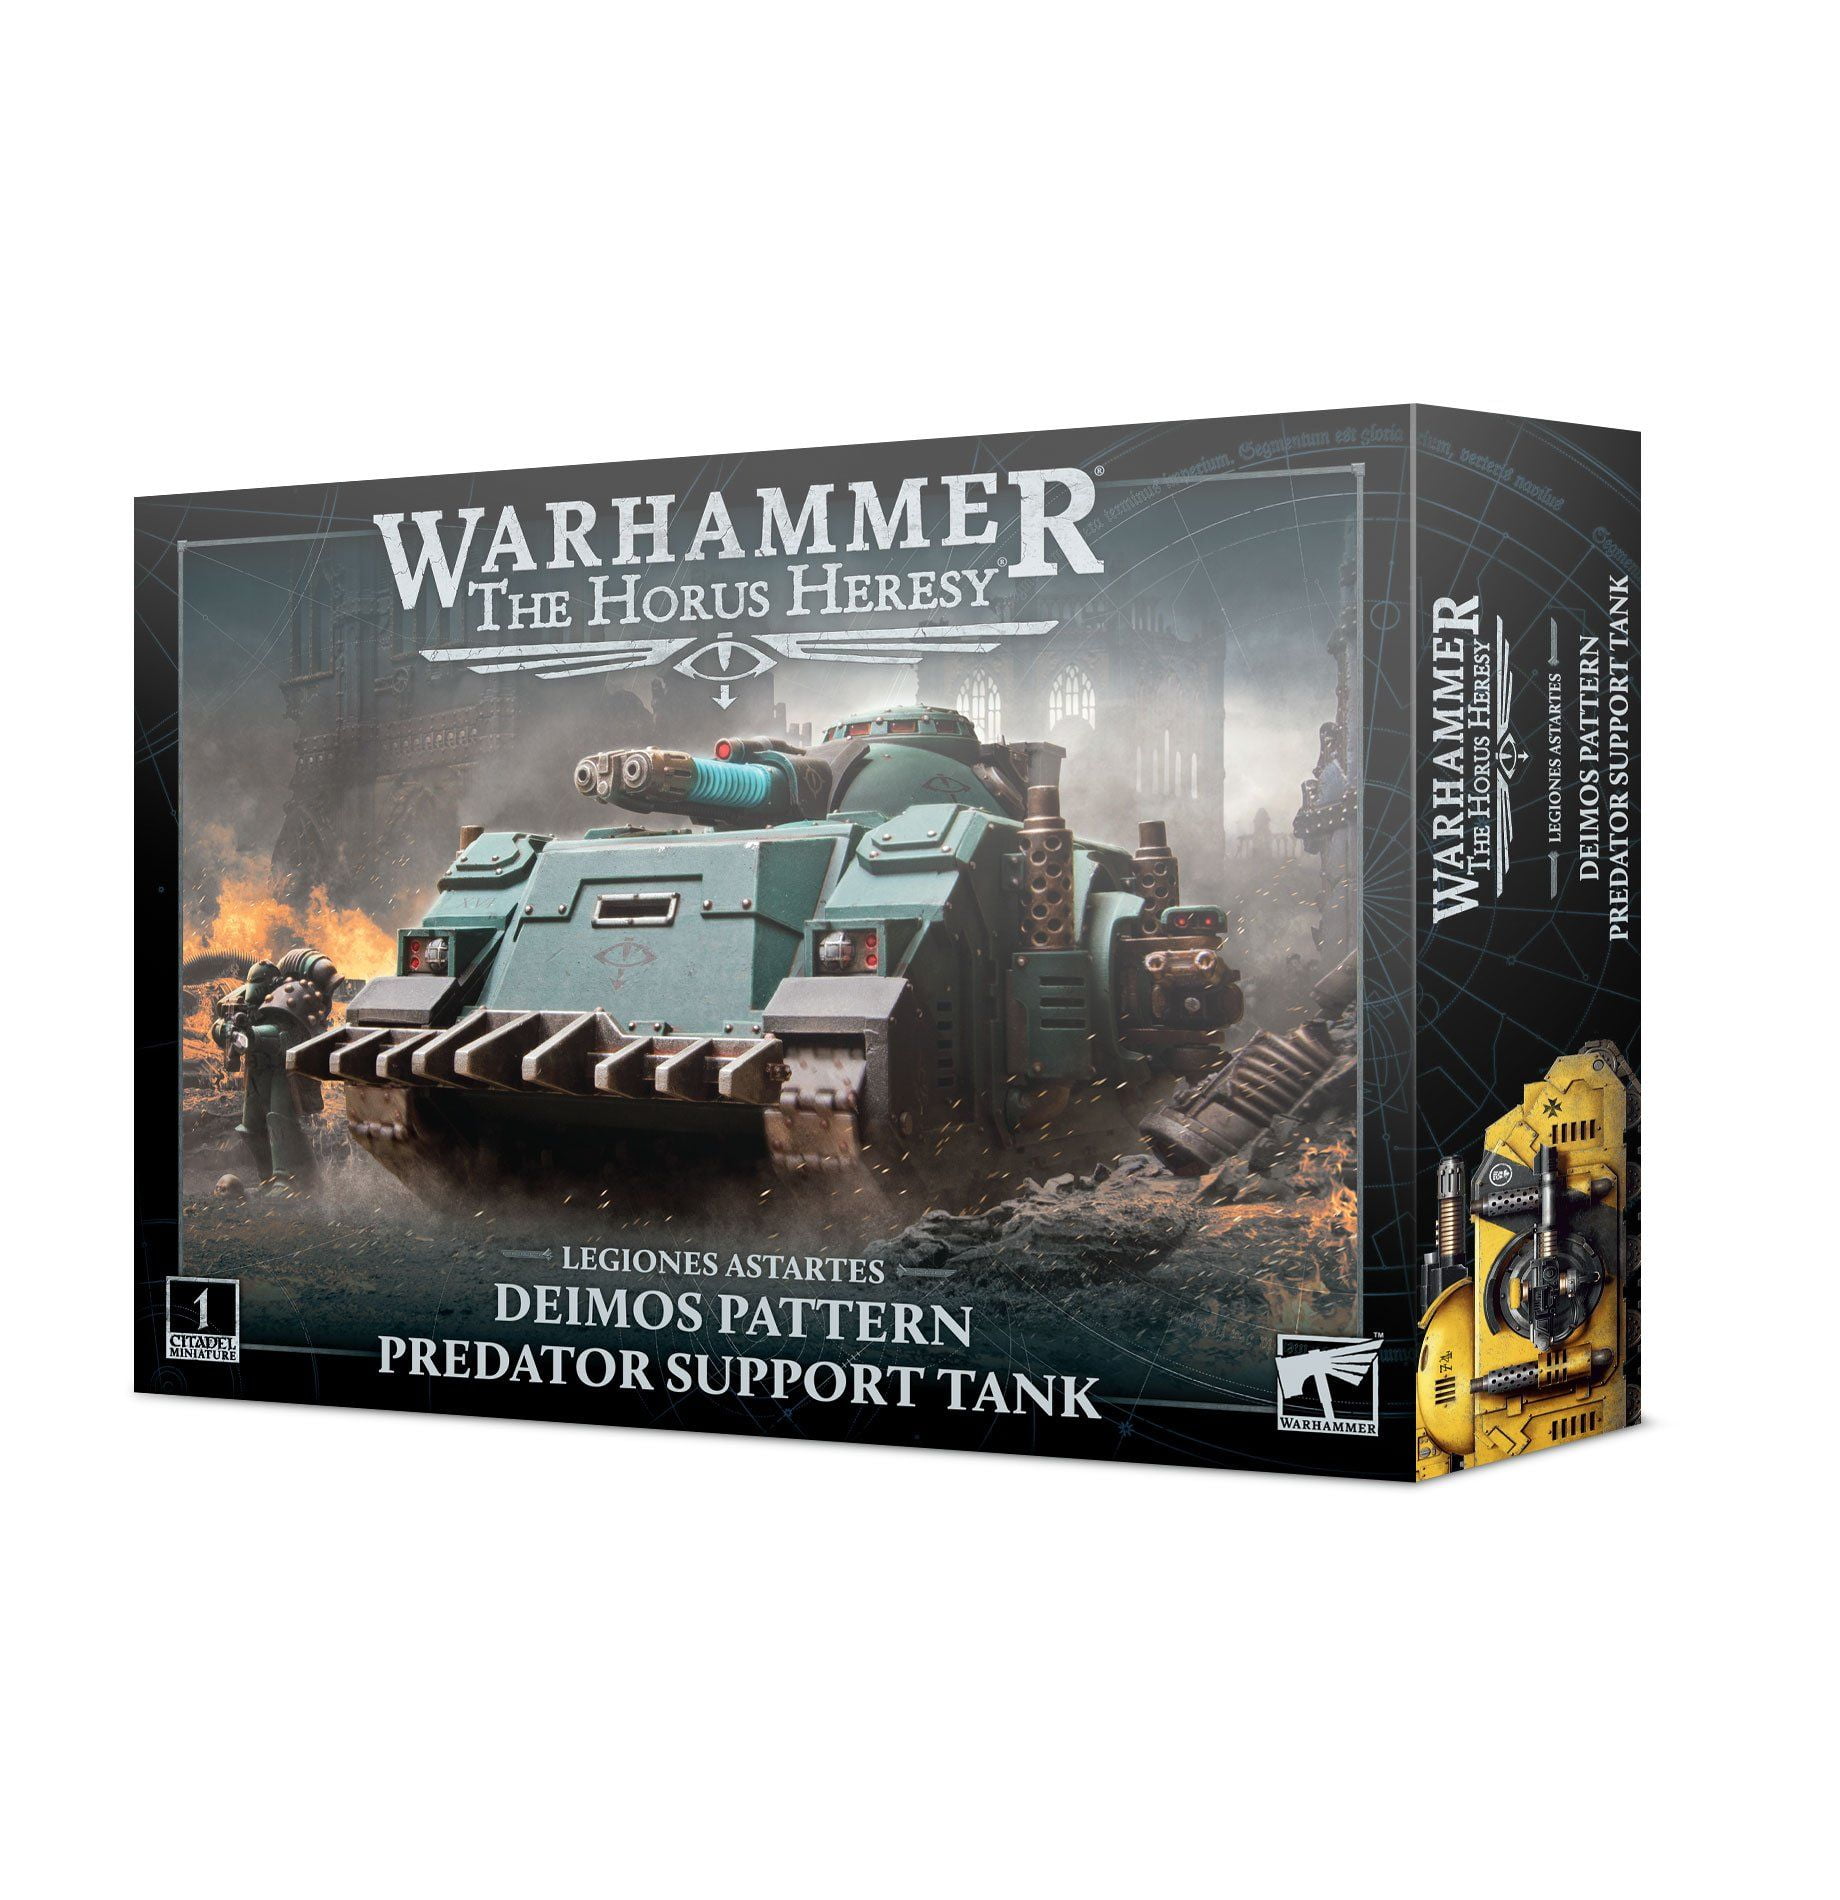 Warhammer: The Horus Heresy - Predator Support Tank